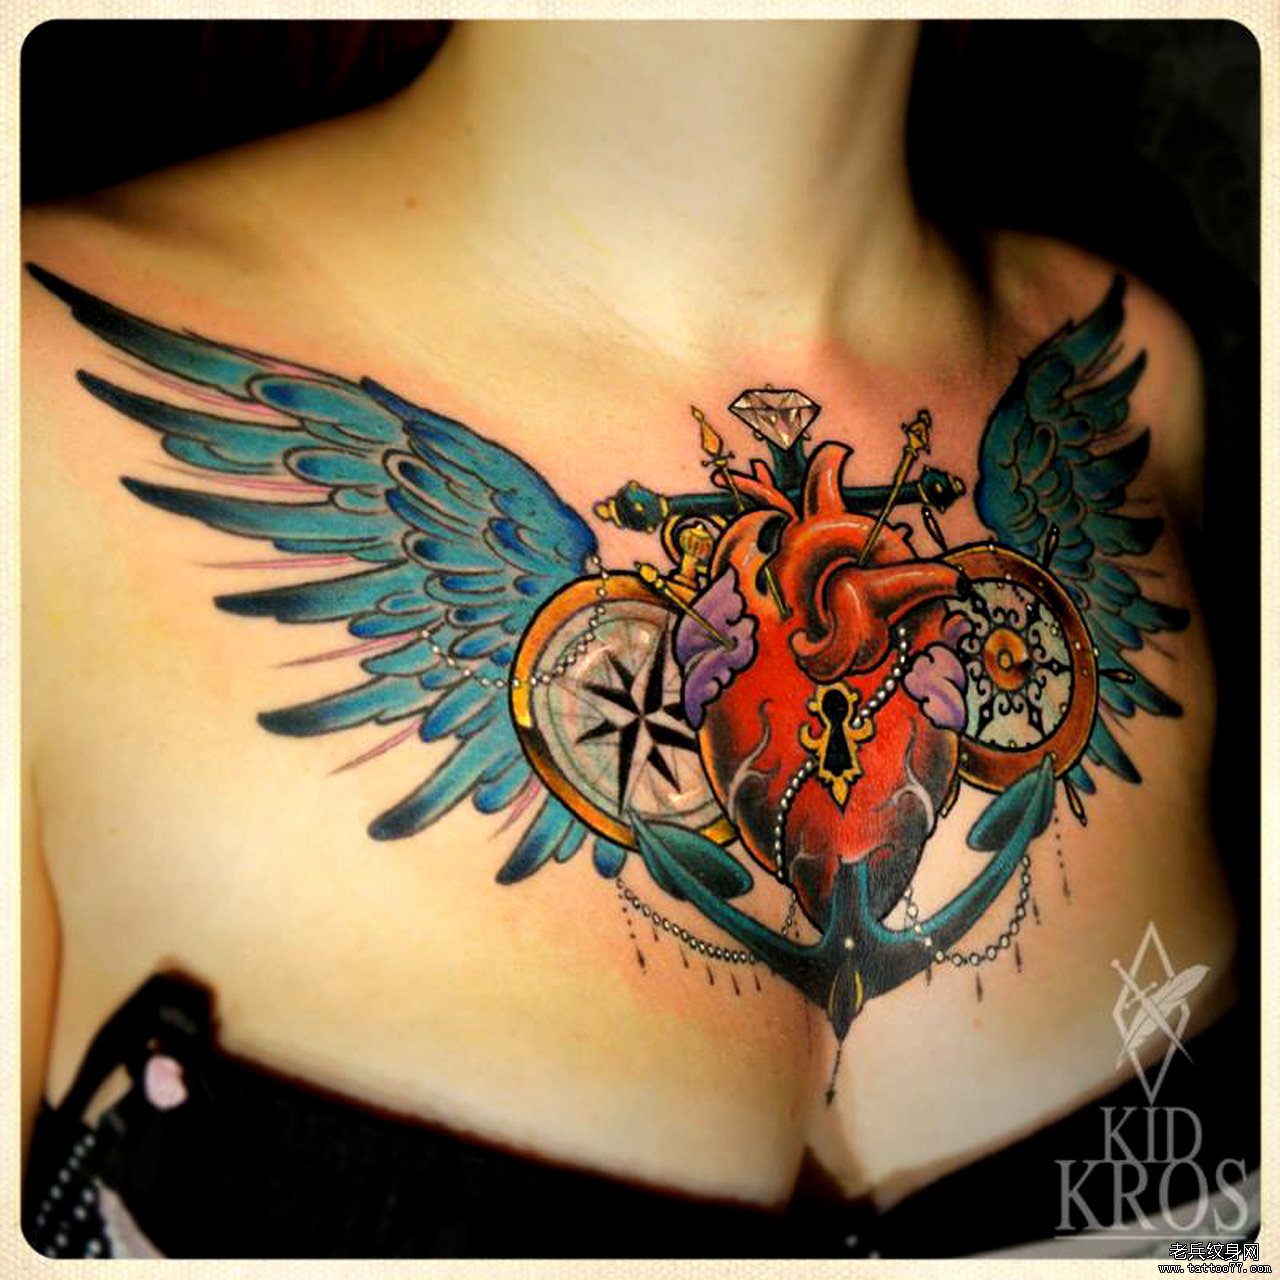 分享一款美女胸口心脏翅膀纹身图案